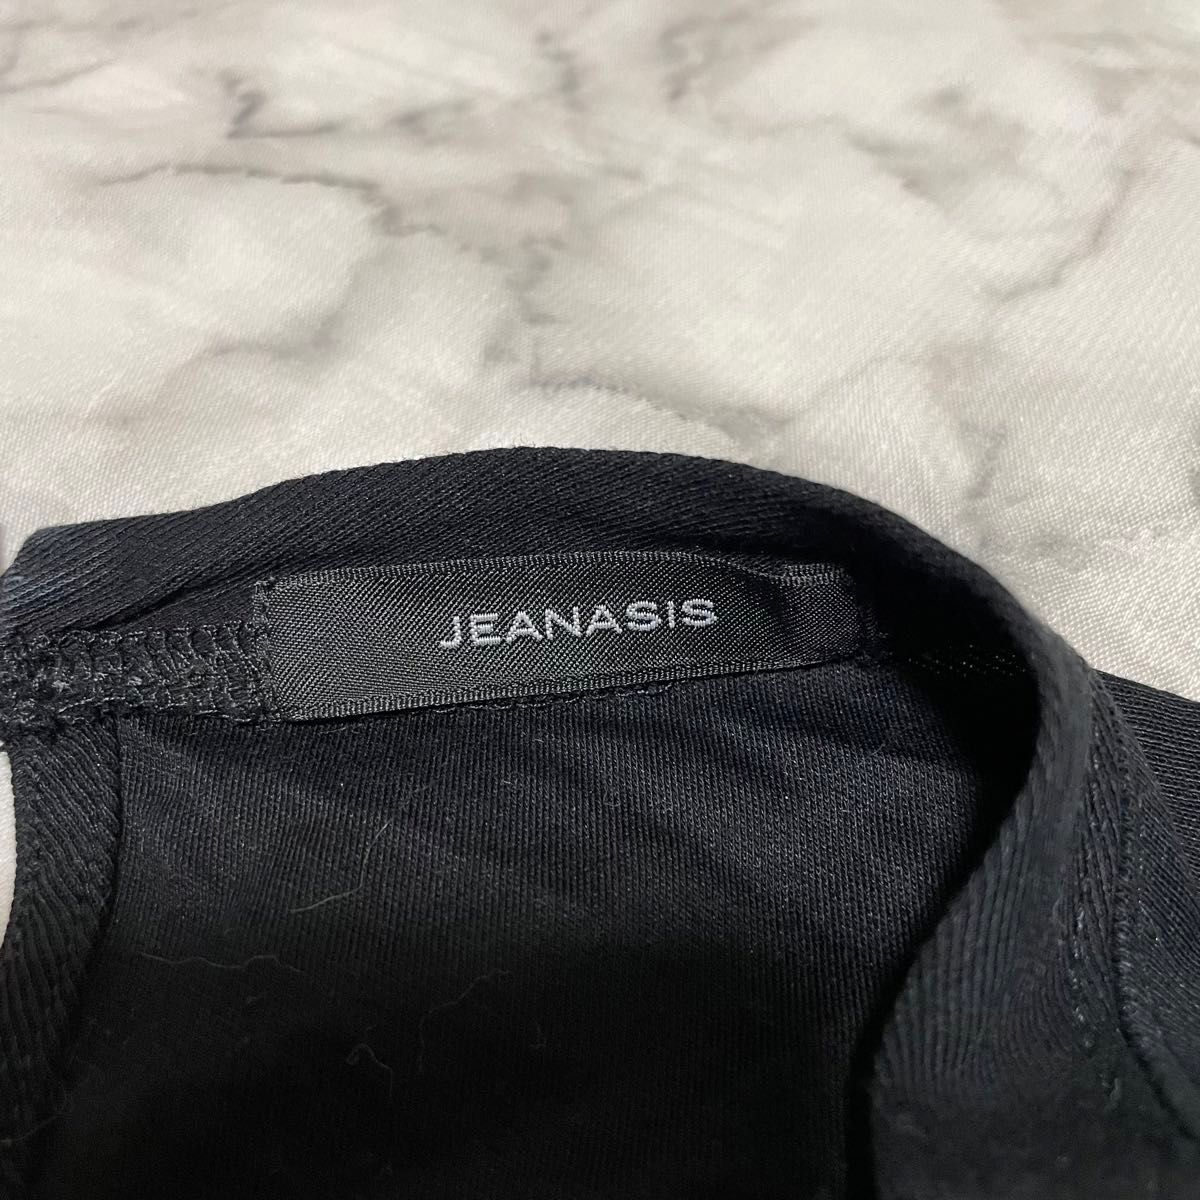 【JEANASIS】カットソー トップス Tシャツ ボリュームシアー袖  半袖